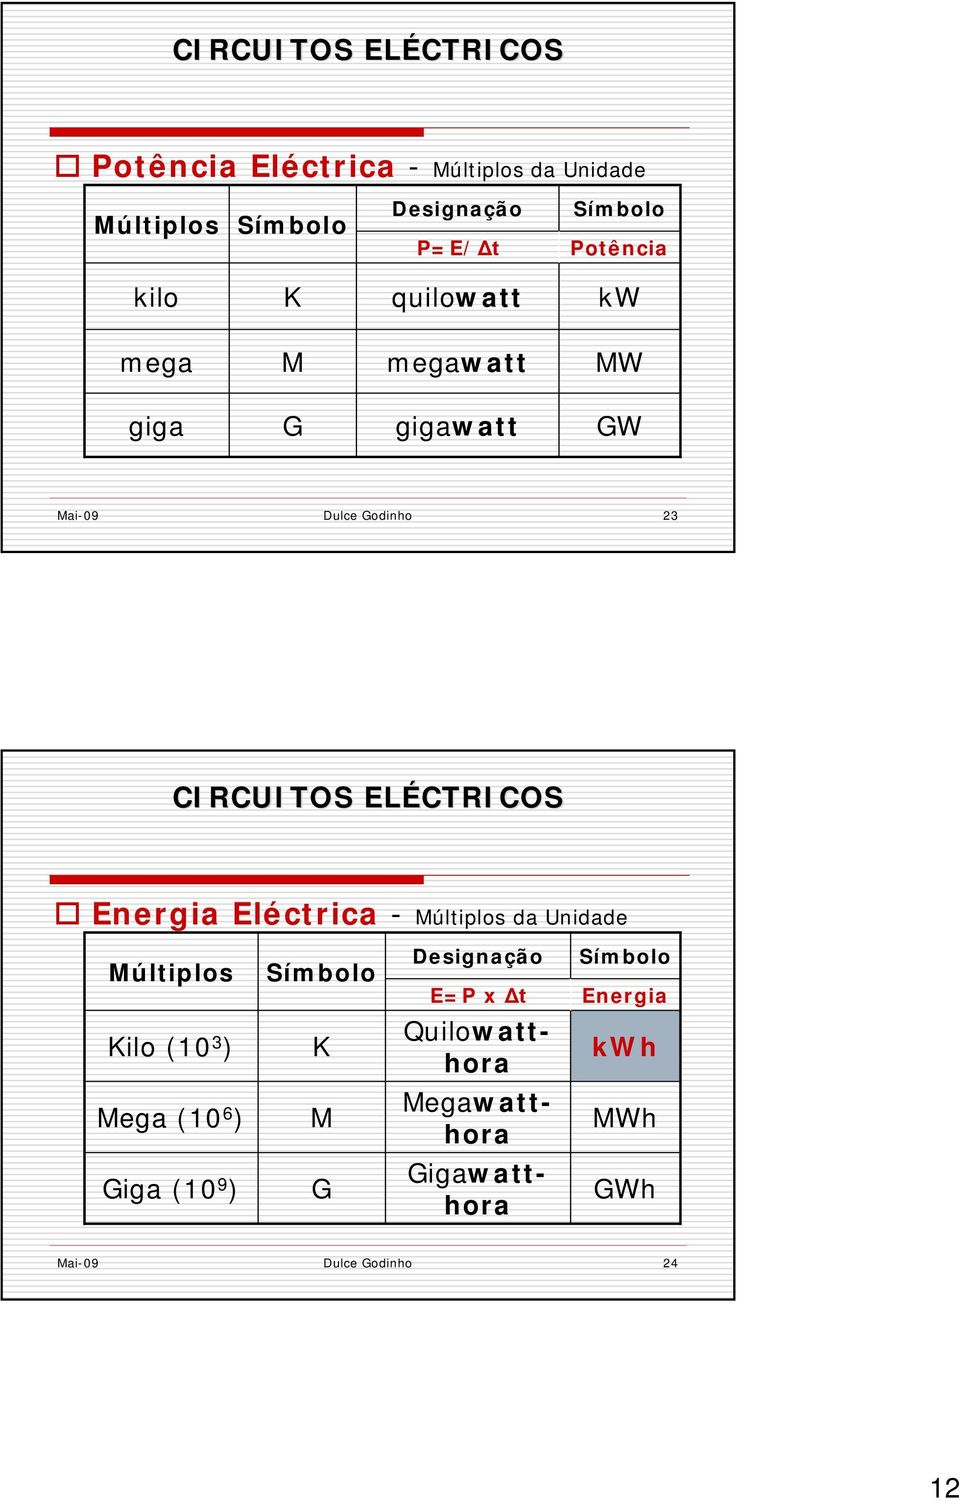 Eléctrica - Múltiplos da Unidade Múltiplos Símbolo Designação E=P x Δt Símbolo Energia Kilo (10 3